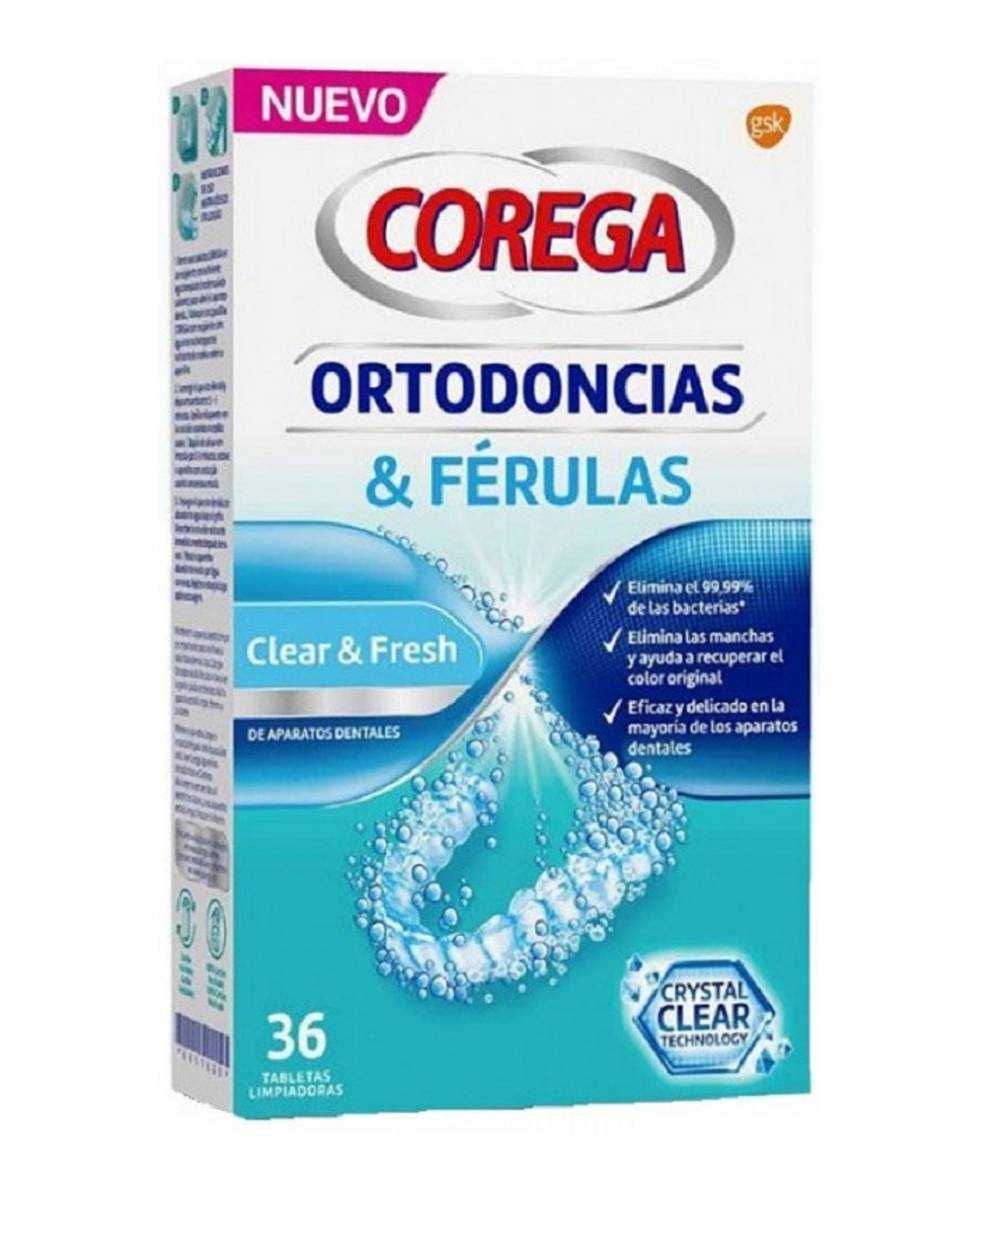 Corega - Ortodoncias y férulas - 36 tabletas limpiadoras